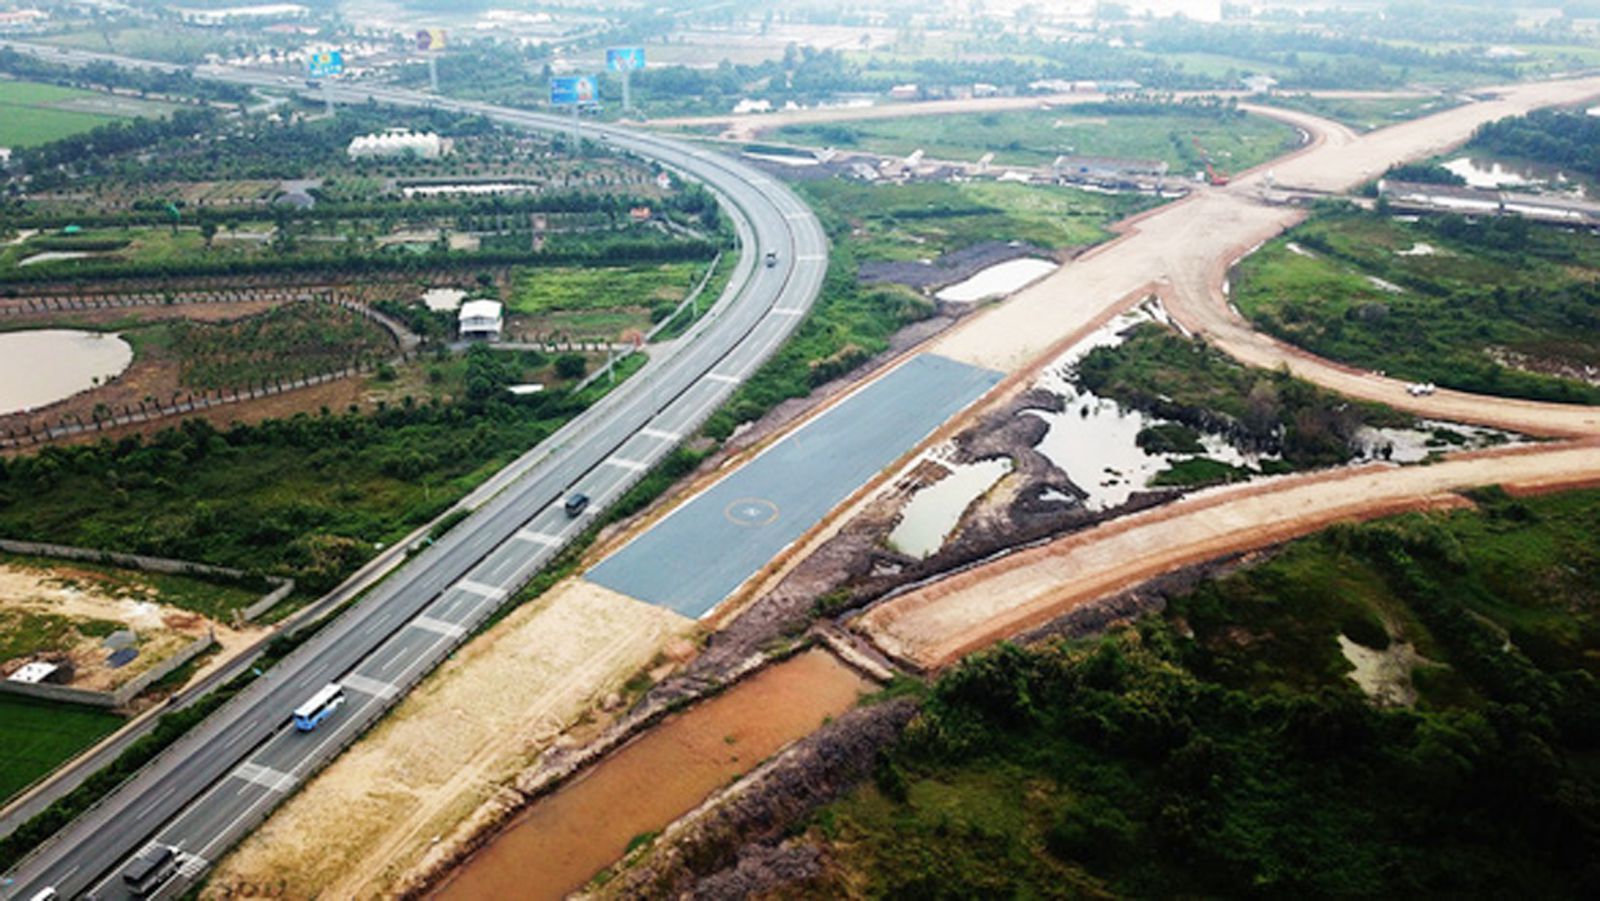 p/Đường cao tốc Trung Lương - Mỹ Thuận thuộc đường cao tốc Bắc - Nam phía Đông đang được đầu tư theo hình thức BOT. Ảnh: MẬU TRƯỜNG